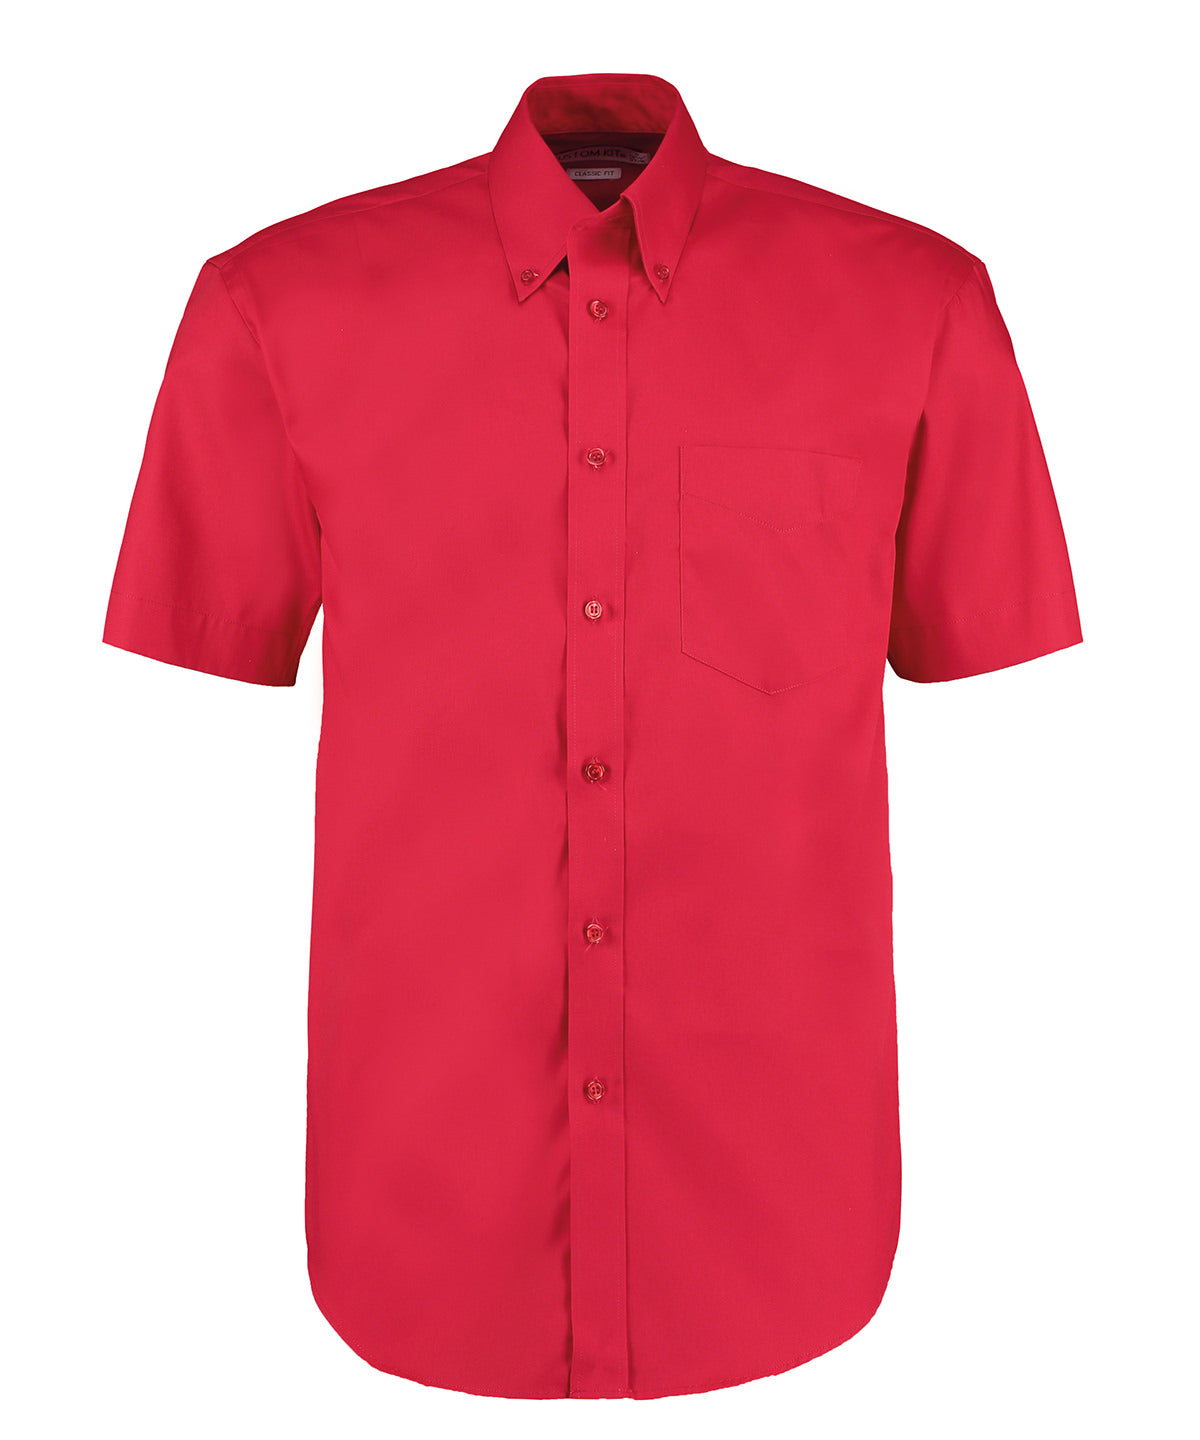 Kustom Kit Corporate Oxford shirt short-sleeved  Red